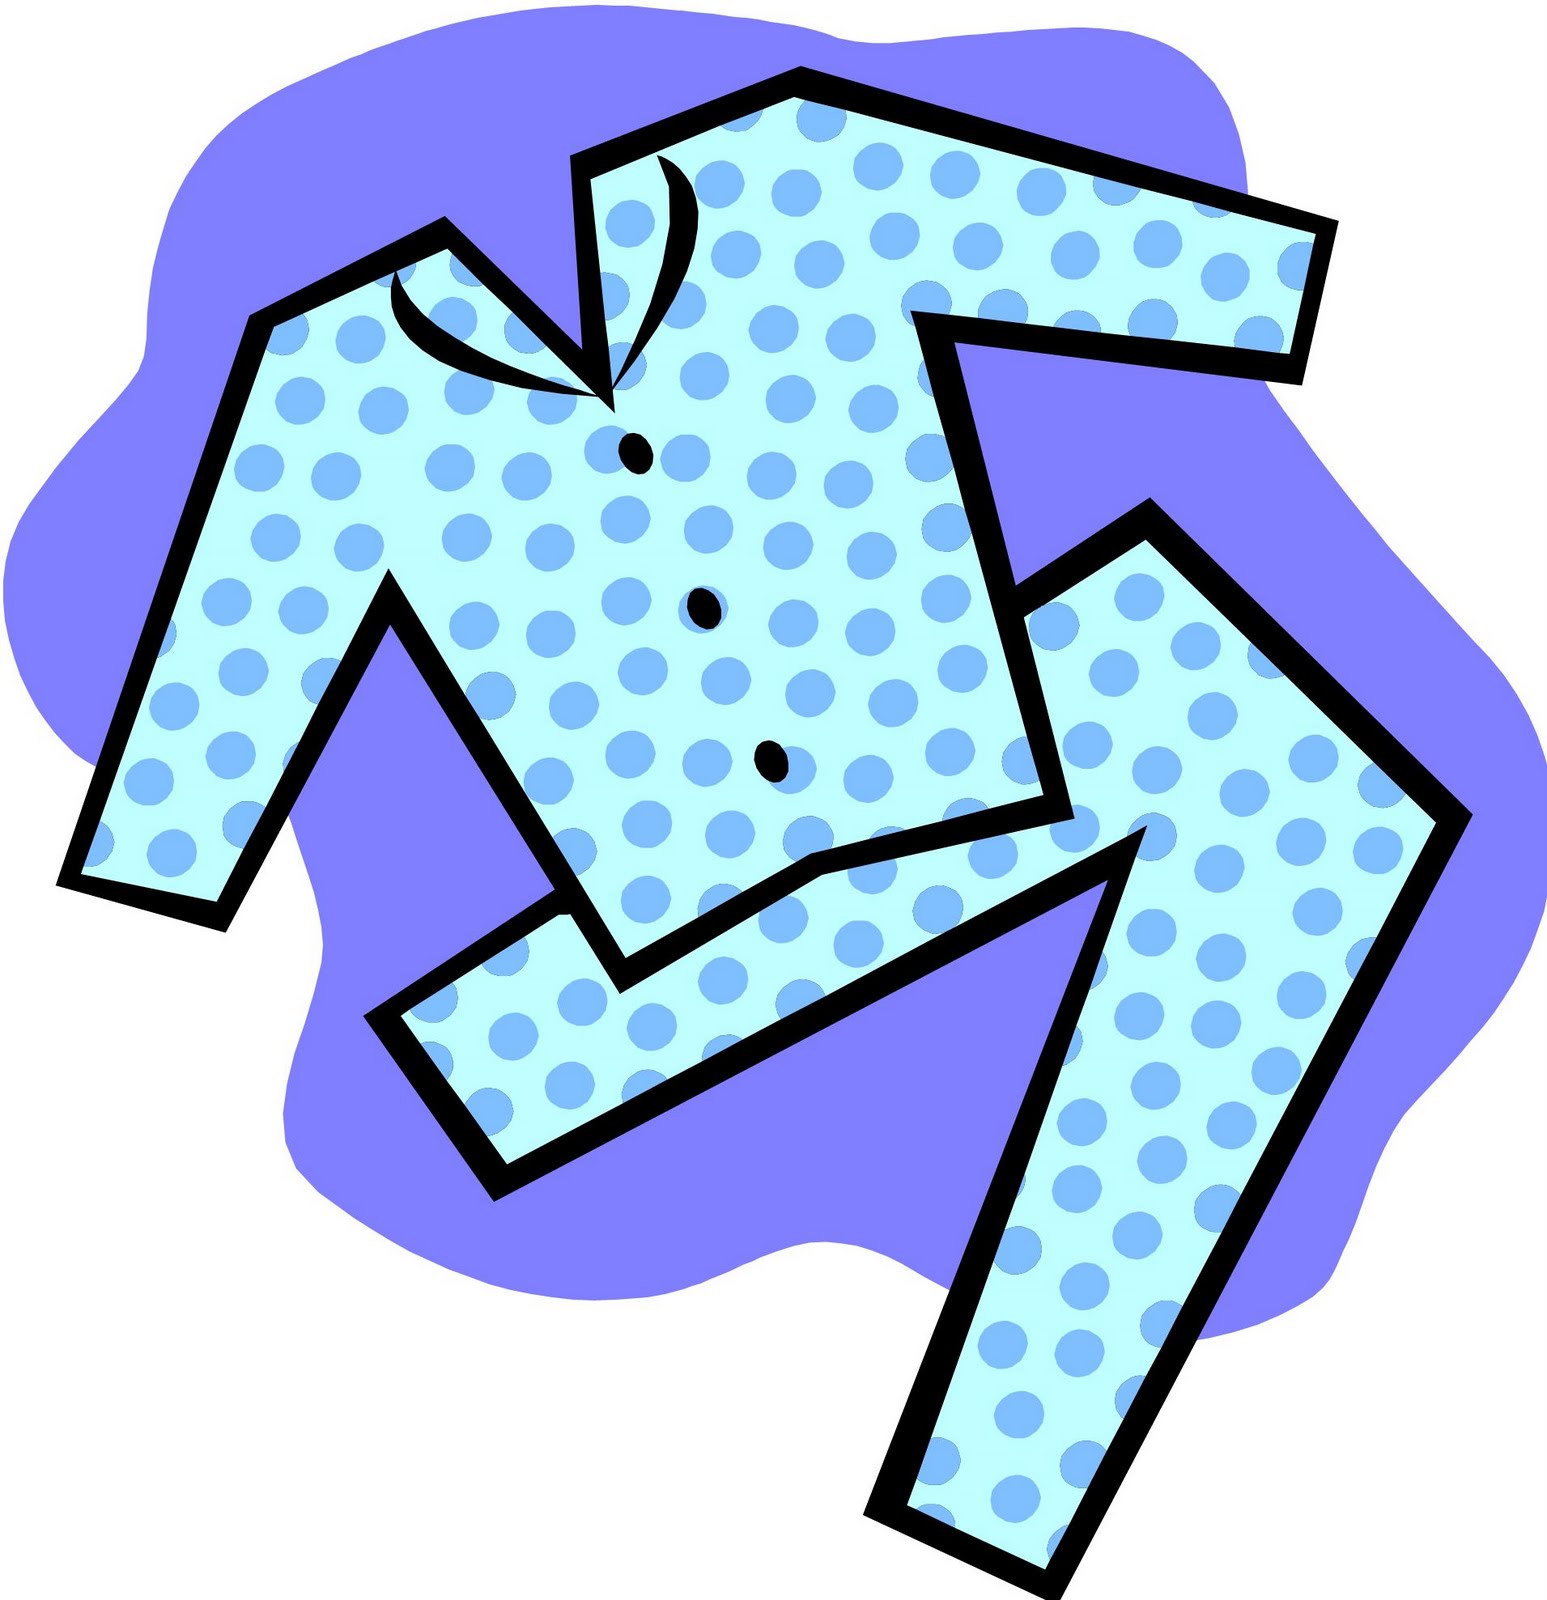 pajama day girl clip art